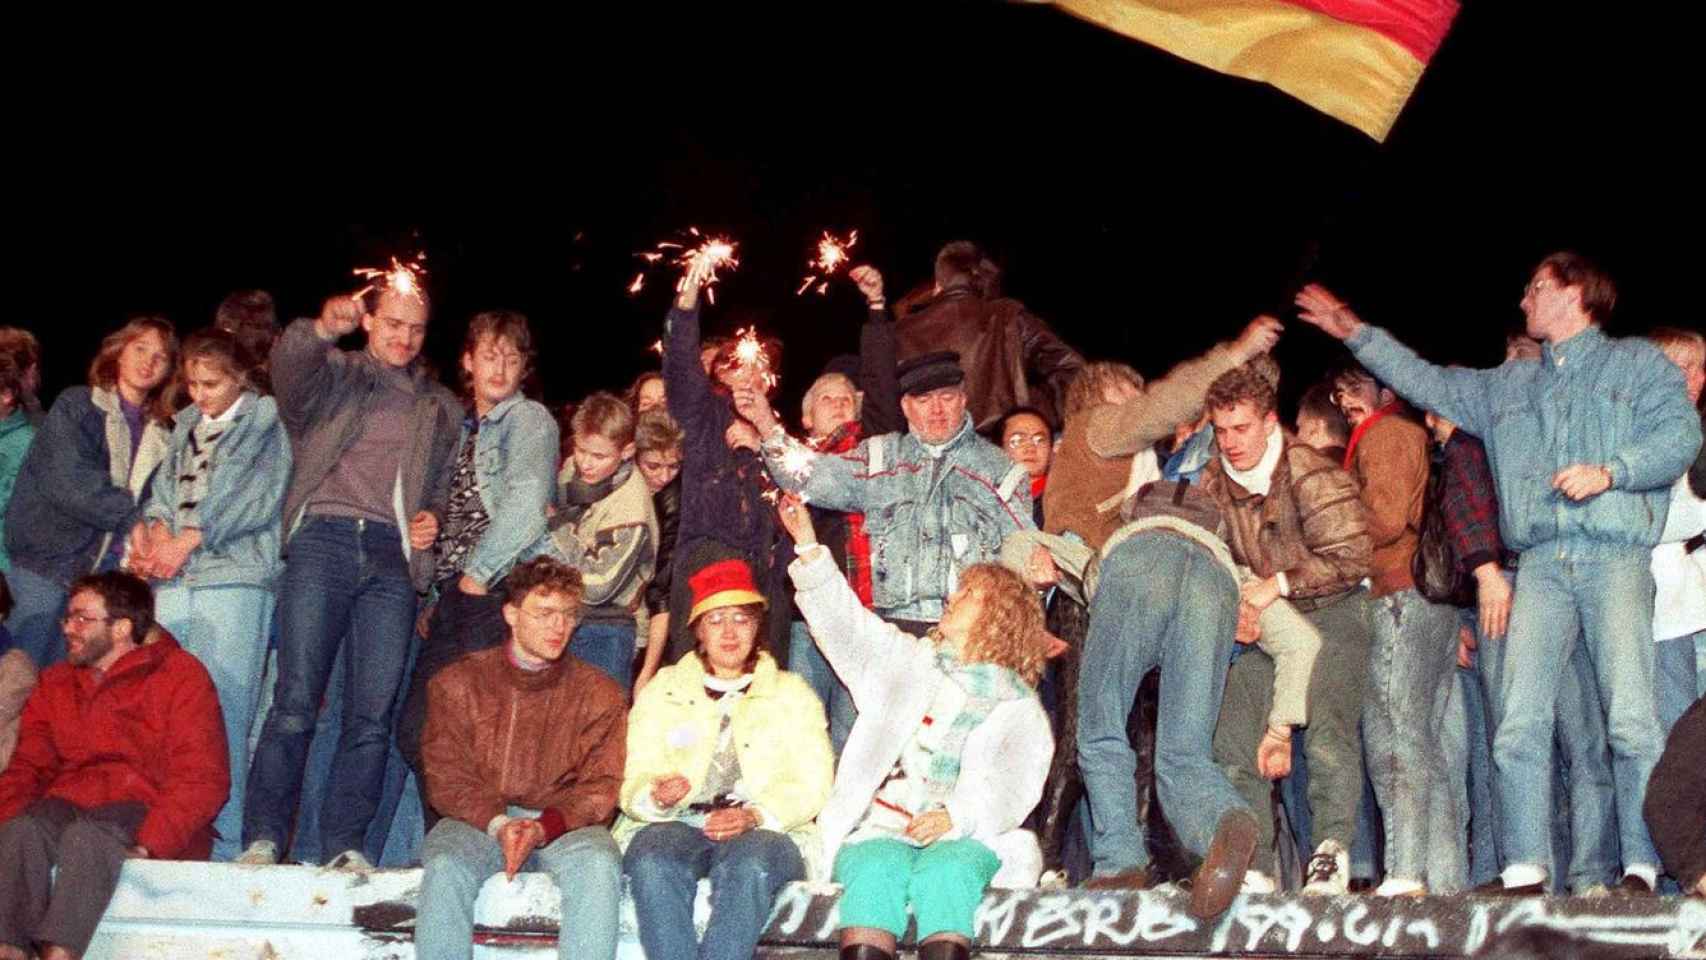 Berlineses celebran la caída del muro, en 1989